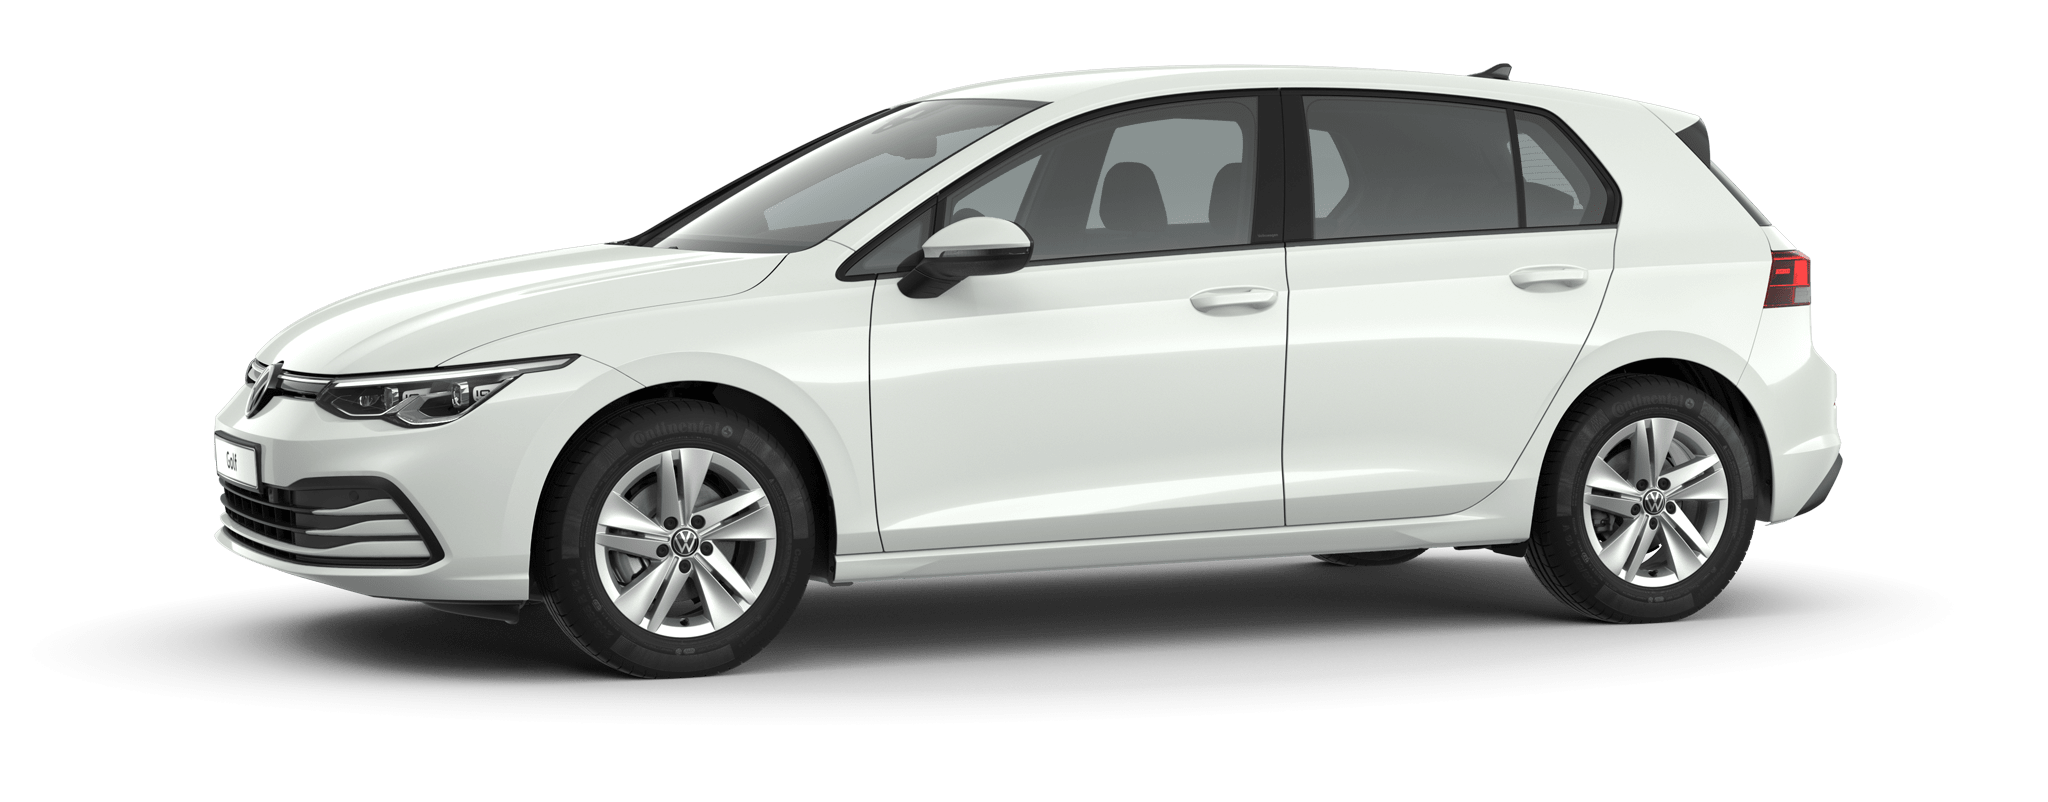 Temerity Passend Betekenis Volkswagen Golf > Perfectie tot in detail | Volkswagen